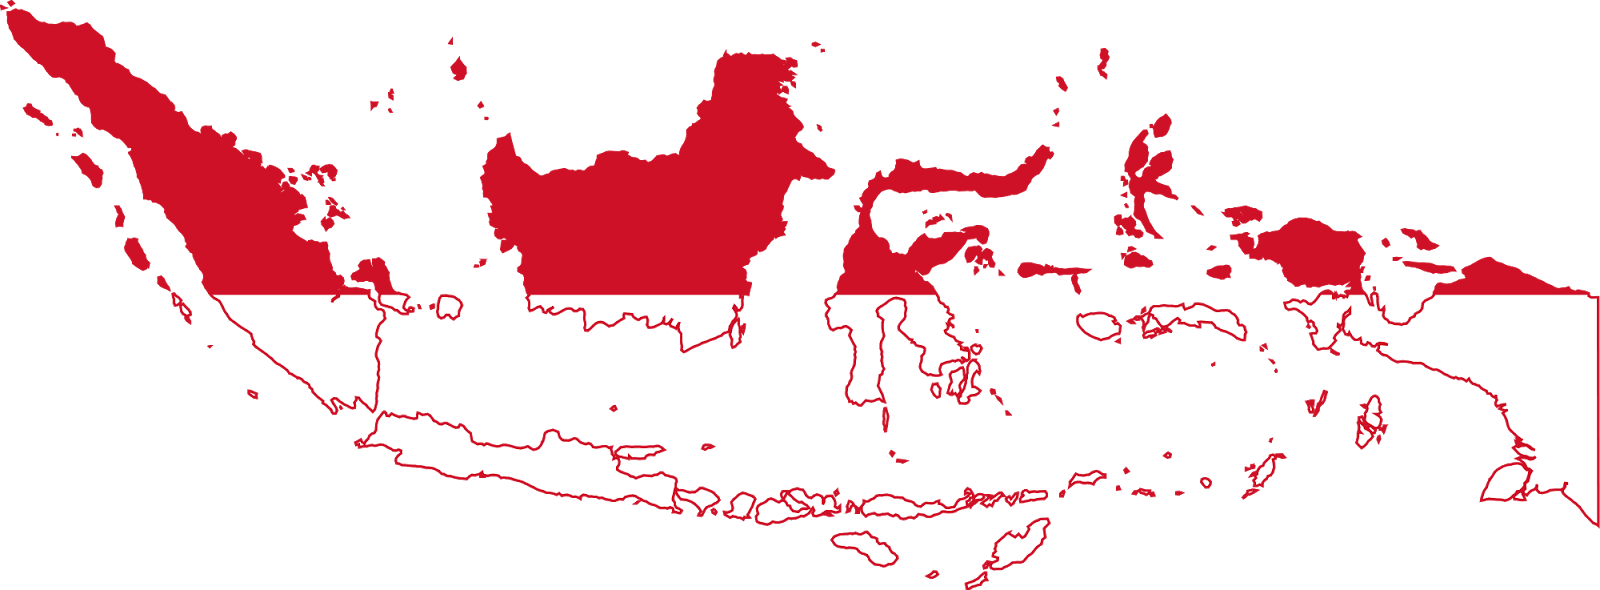 Berapa Jumlah Pulau di Indonesia? ~ Jelajah Waktu